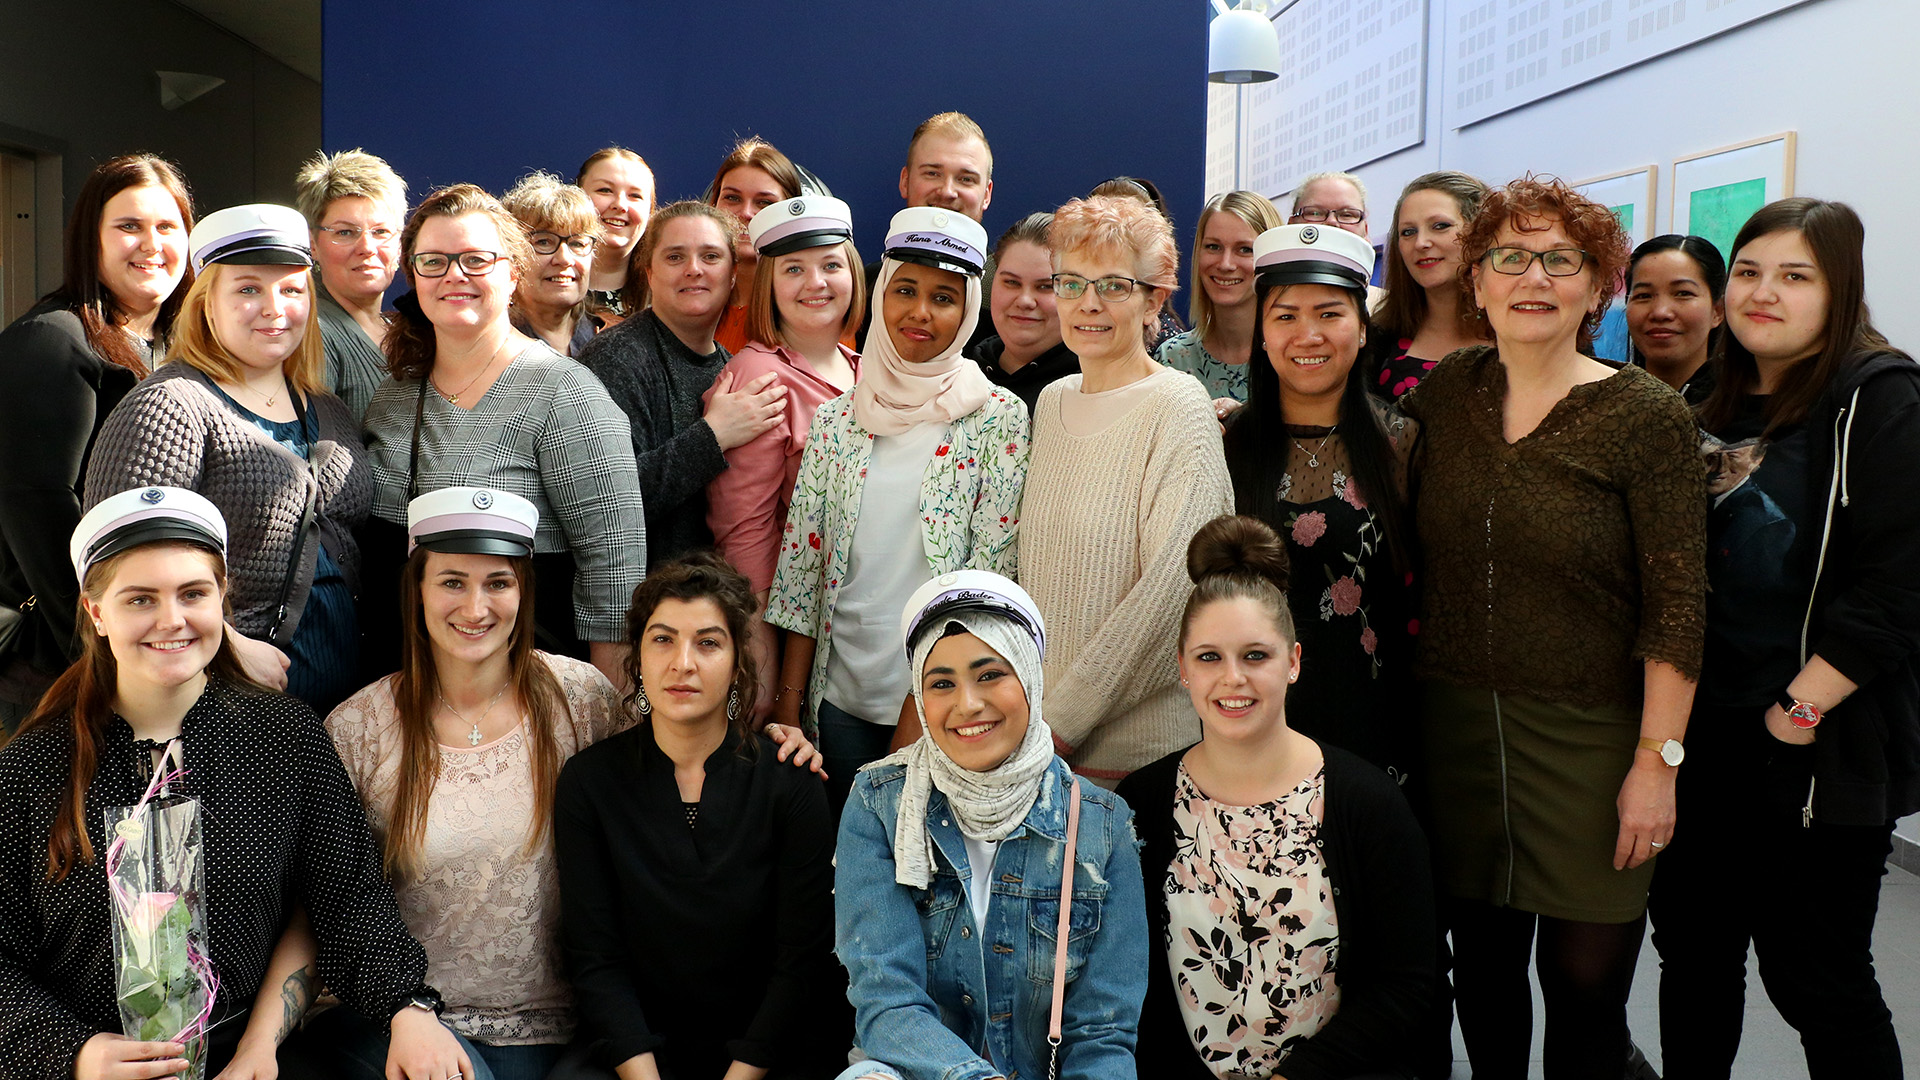 Gruppefoto dimission ved Social og sundhedsskolen i Svendborg